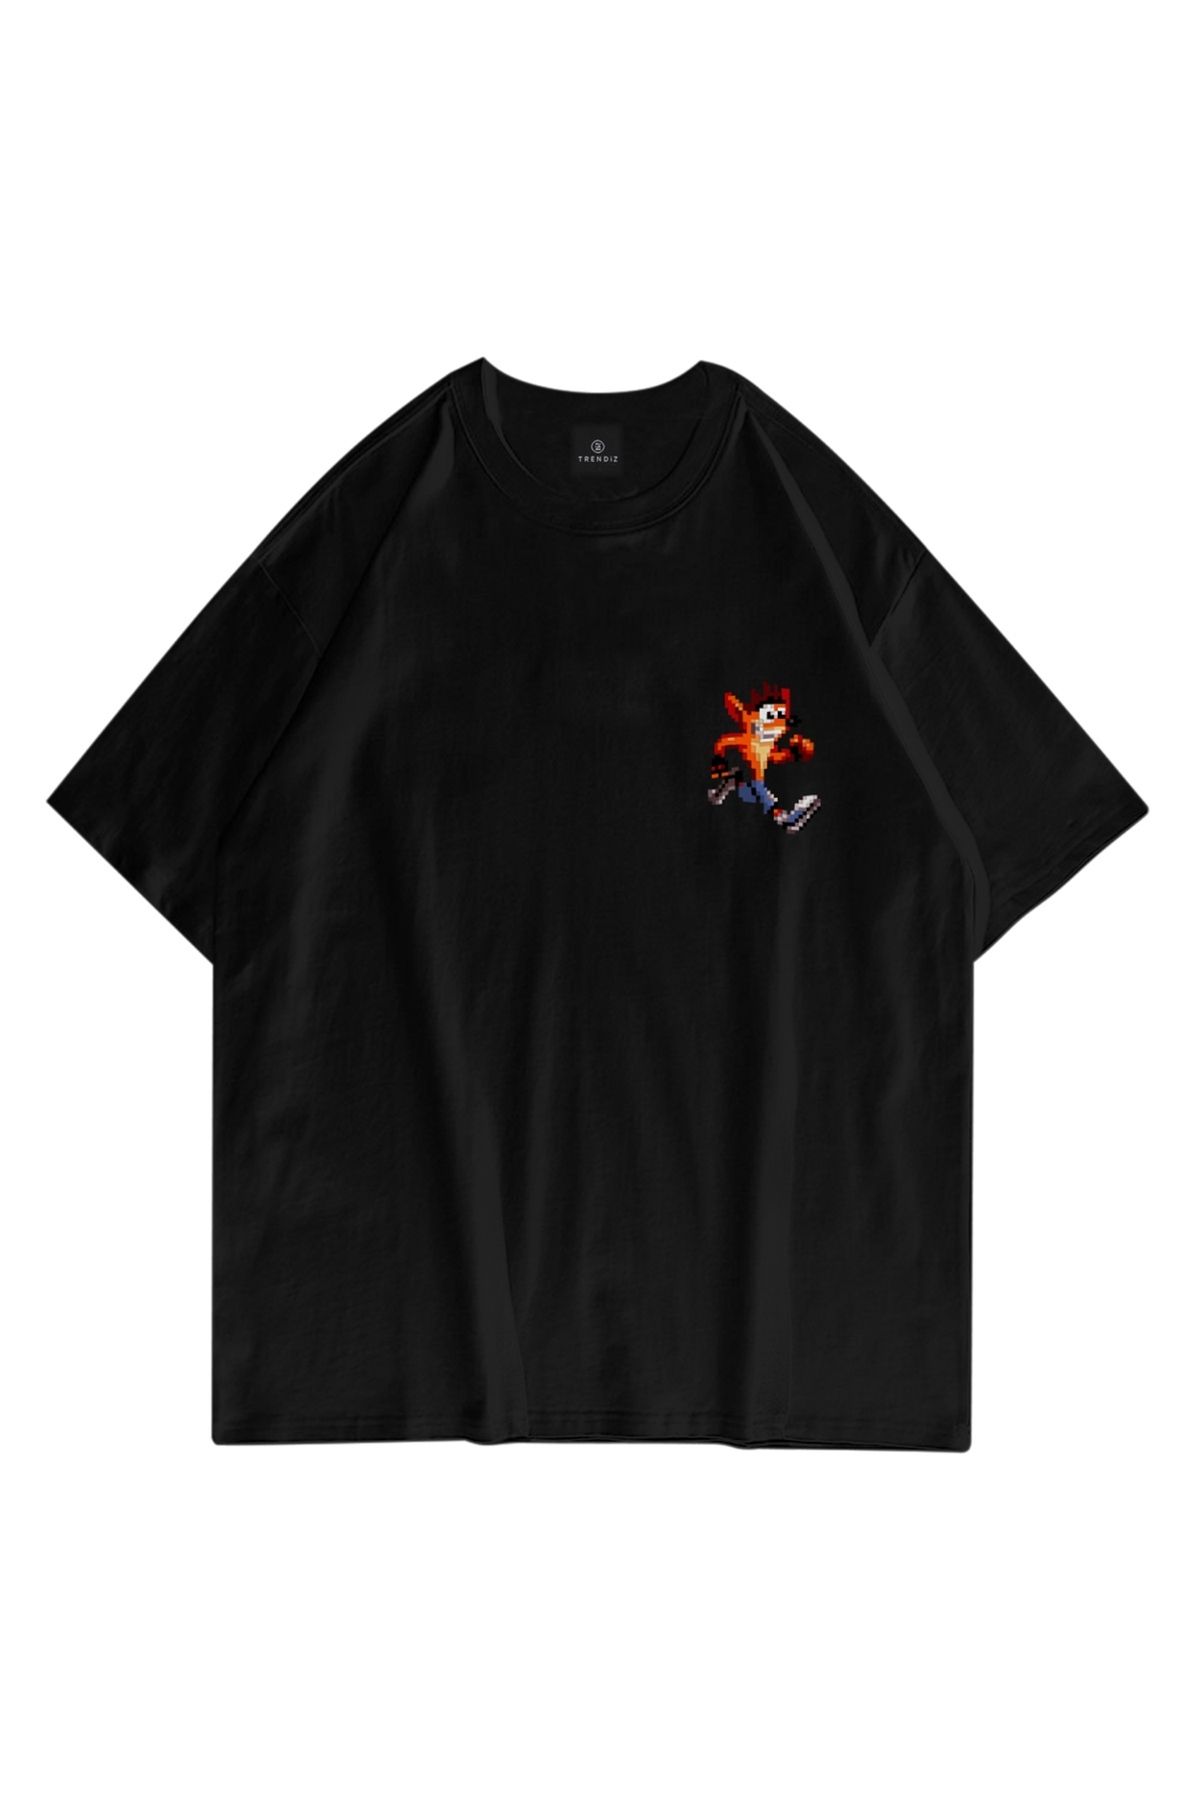 Tarzsokak Unisex Crash Bandicoot Siyah Tshirt